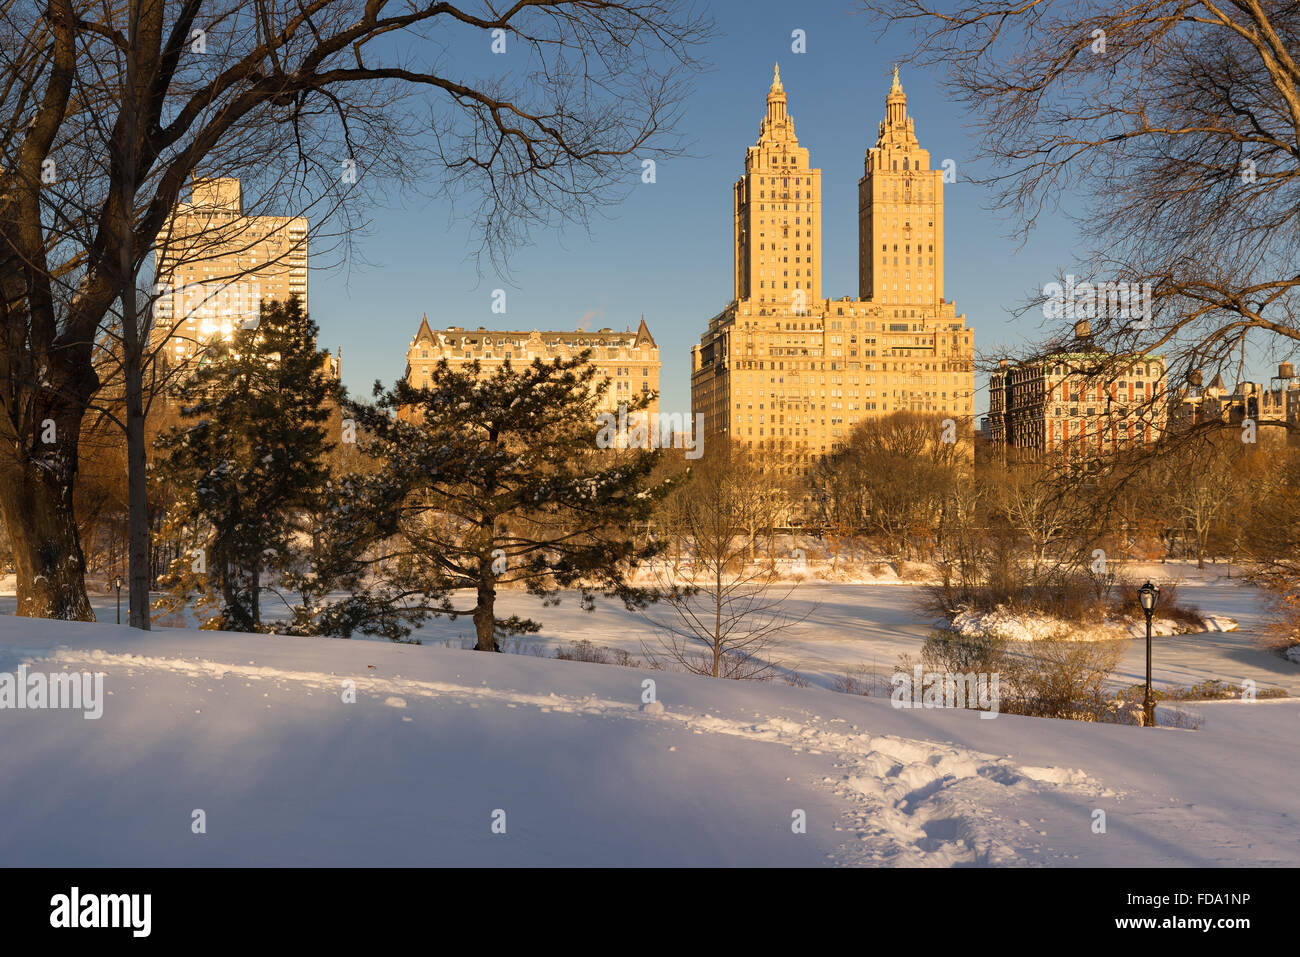 Lever du soleil sur le lac gelé dans Central Park après une tempête d'hiver avec vue sur les bâtiments de l'Upper West Side. Manhattan, New York Banque D'Images